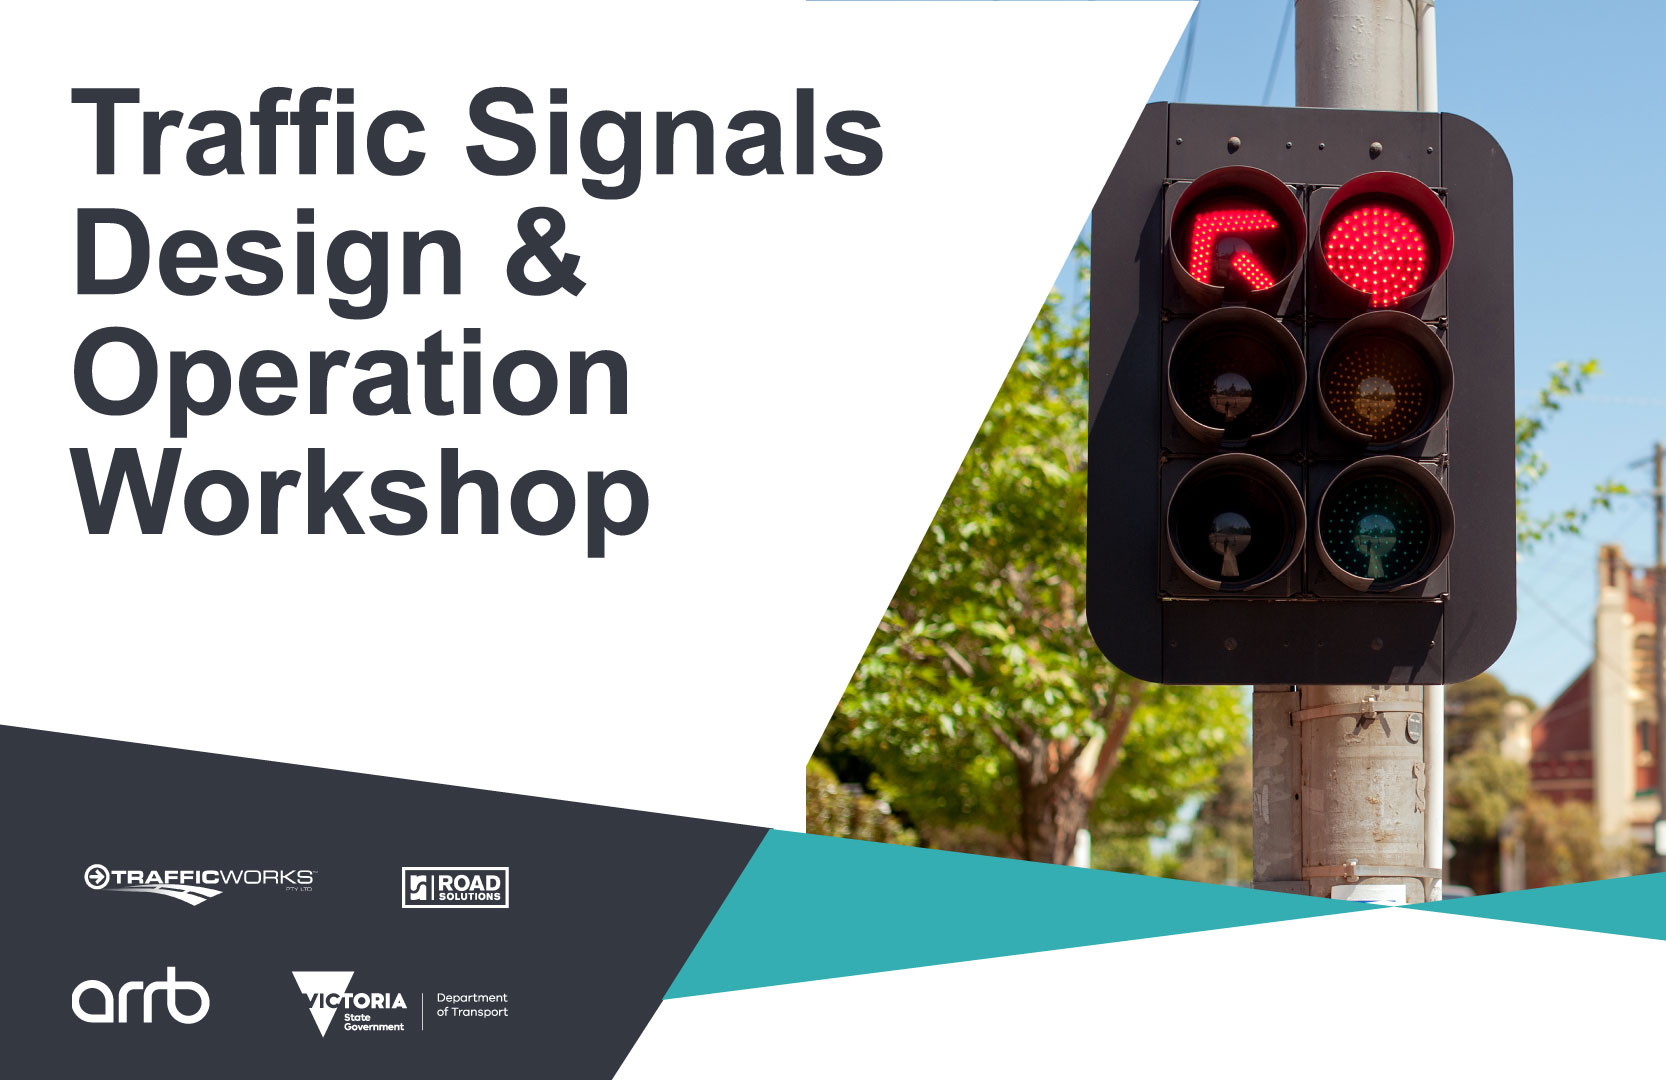 DoT Traffic Signals Design & Operation Workshop